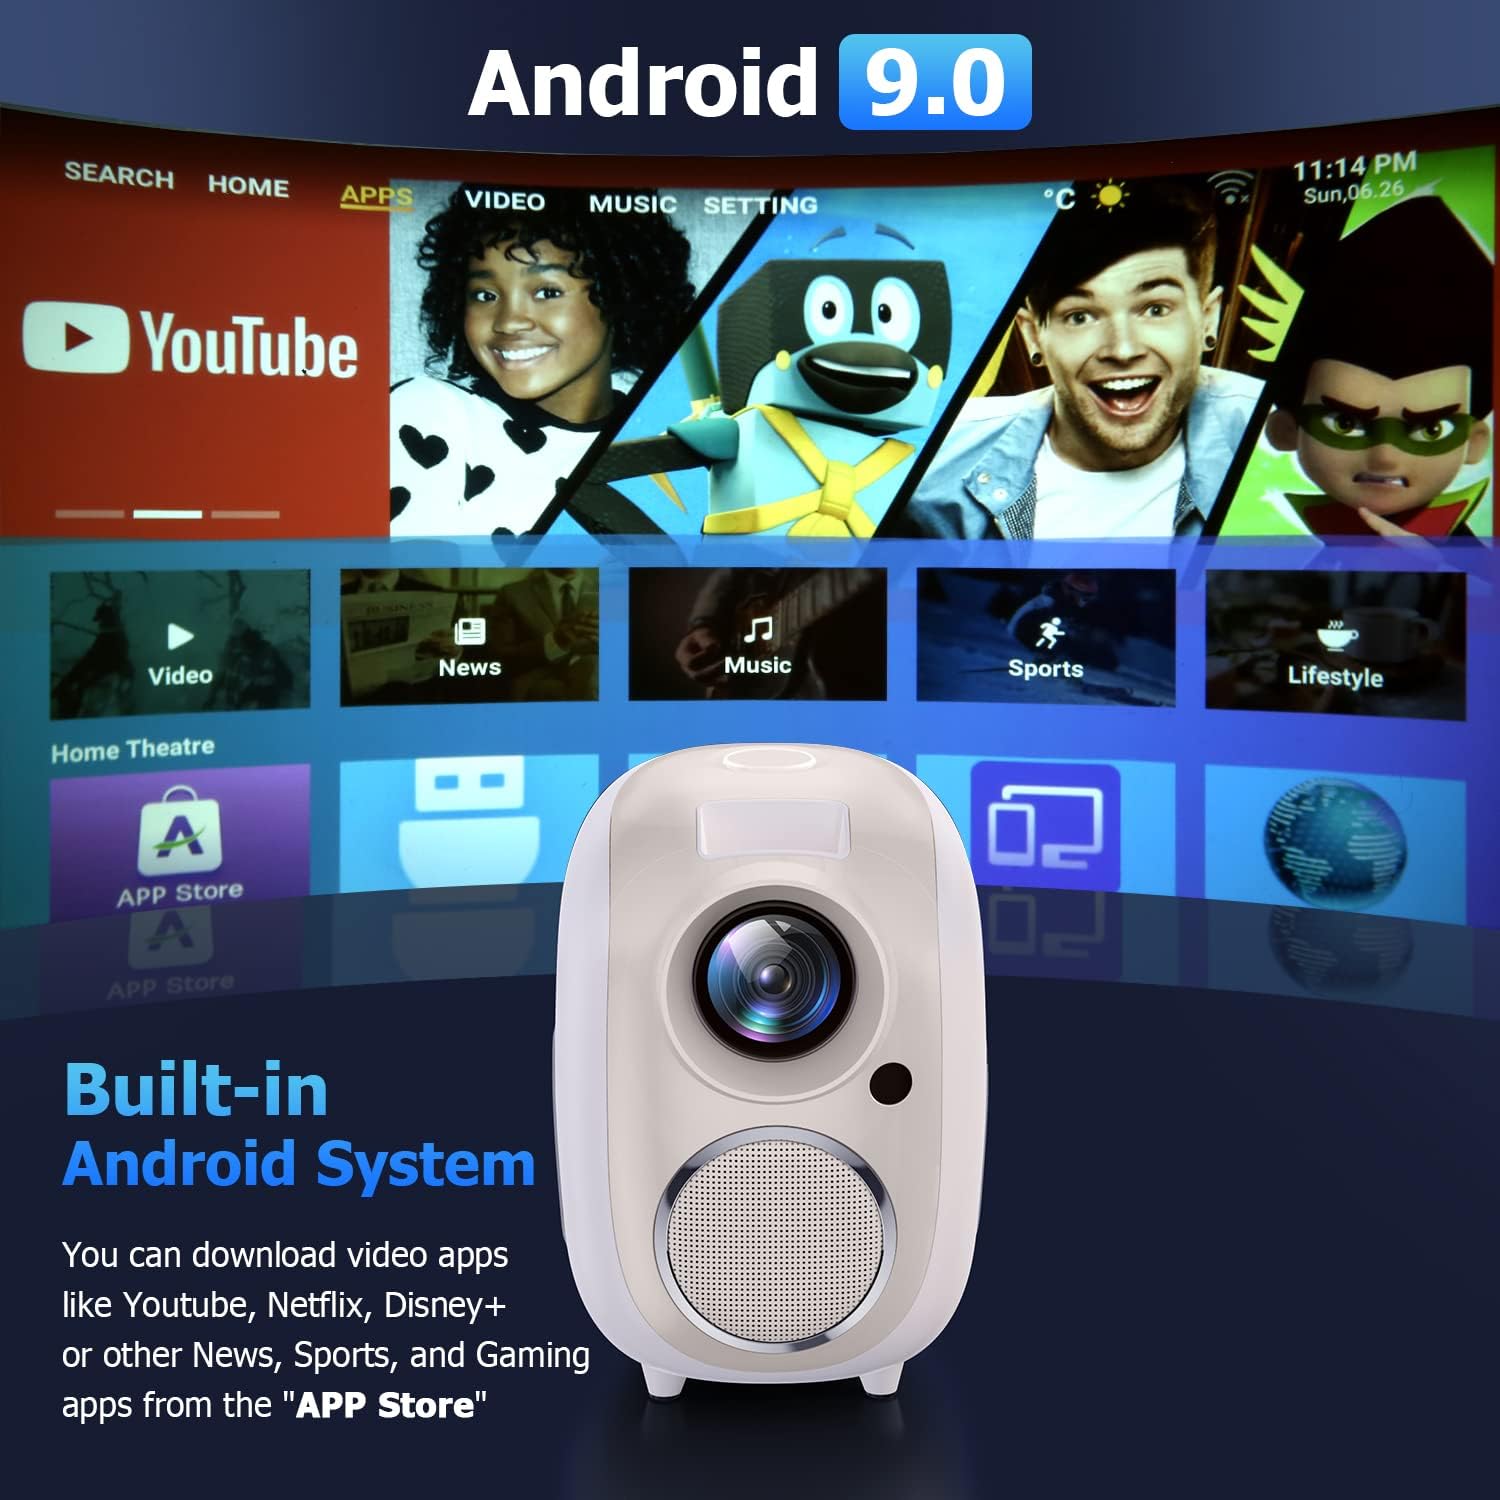 atongm 4k Projektör Wifi ve Bluetooth, Android 9.0 ile, 12000 Lümen Taşınabilir Video Projektör, Full HD 1080P 4K Akıllı Telefonla Uyumlu